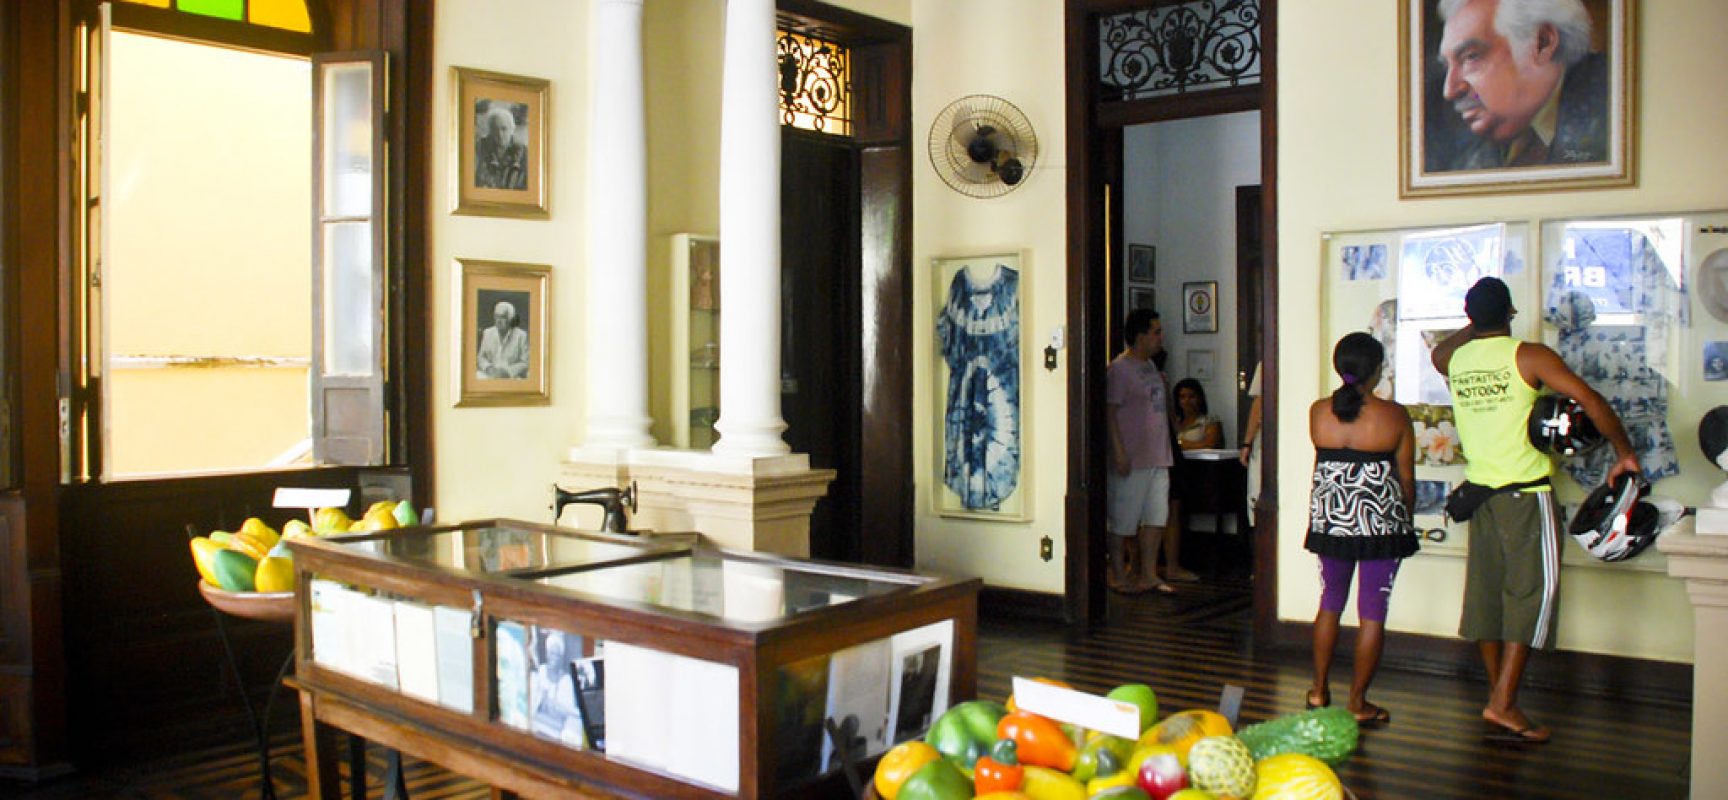 Casa Jorge Amado terá visitação gratuita no Dia Internacional de Museus, 18 de maio